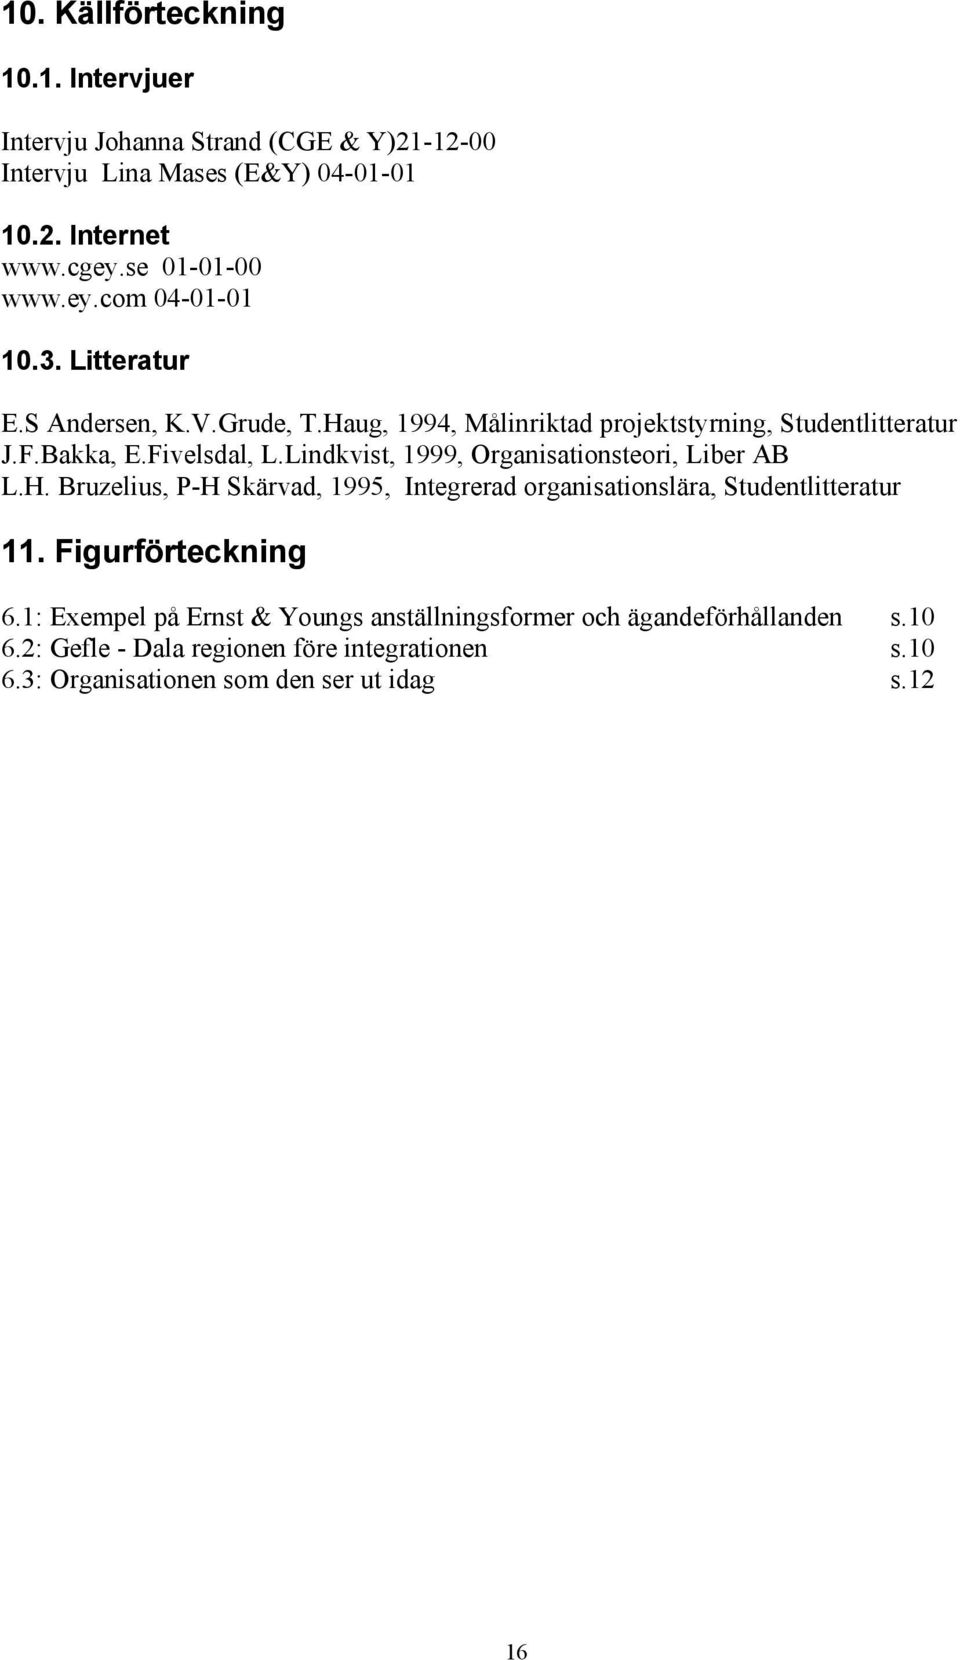 Lindkvist, 1999, Organisationsteori, Liber AB L.H. Bruzelius, P-H Skärvad, 1995, Integrerad organisationslära, Studentlitteratur 11. Figurförteckning 6.